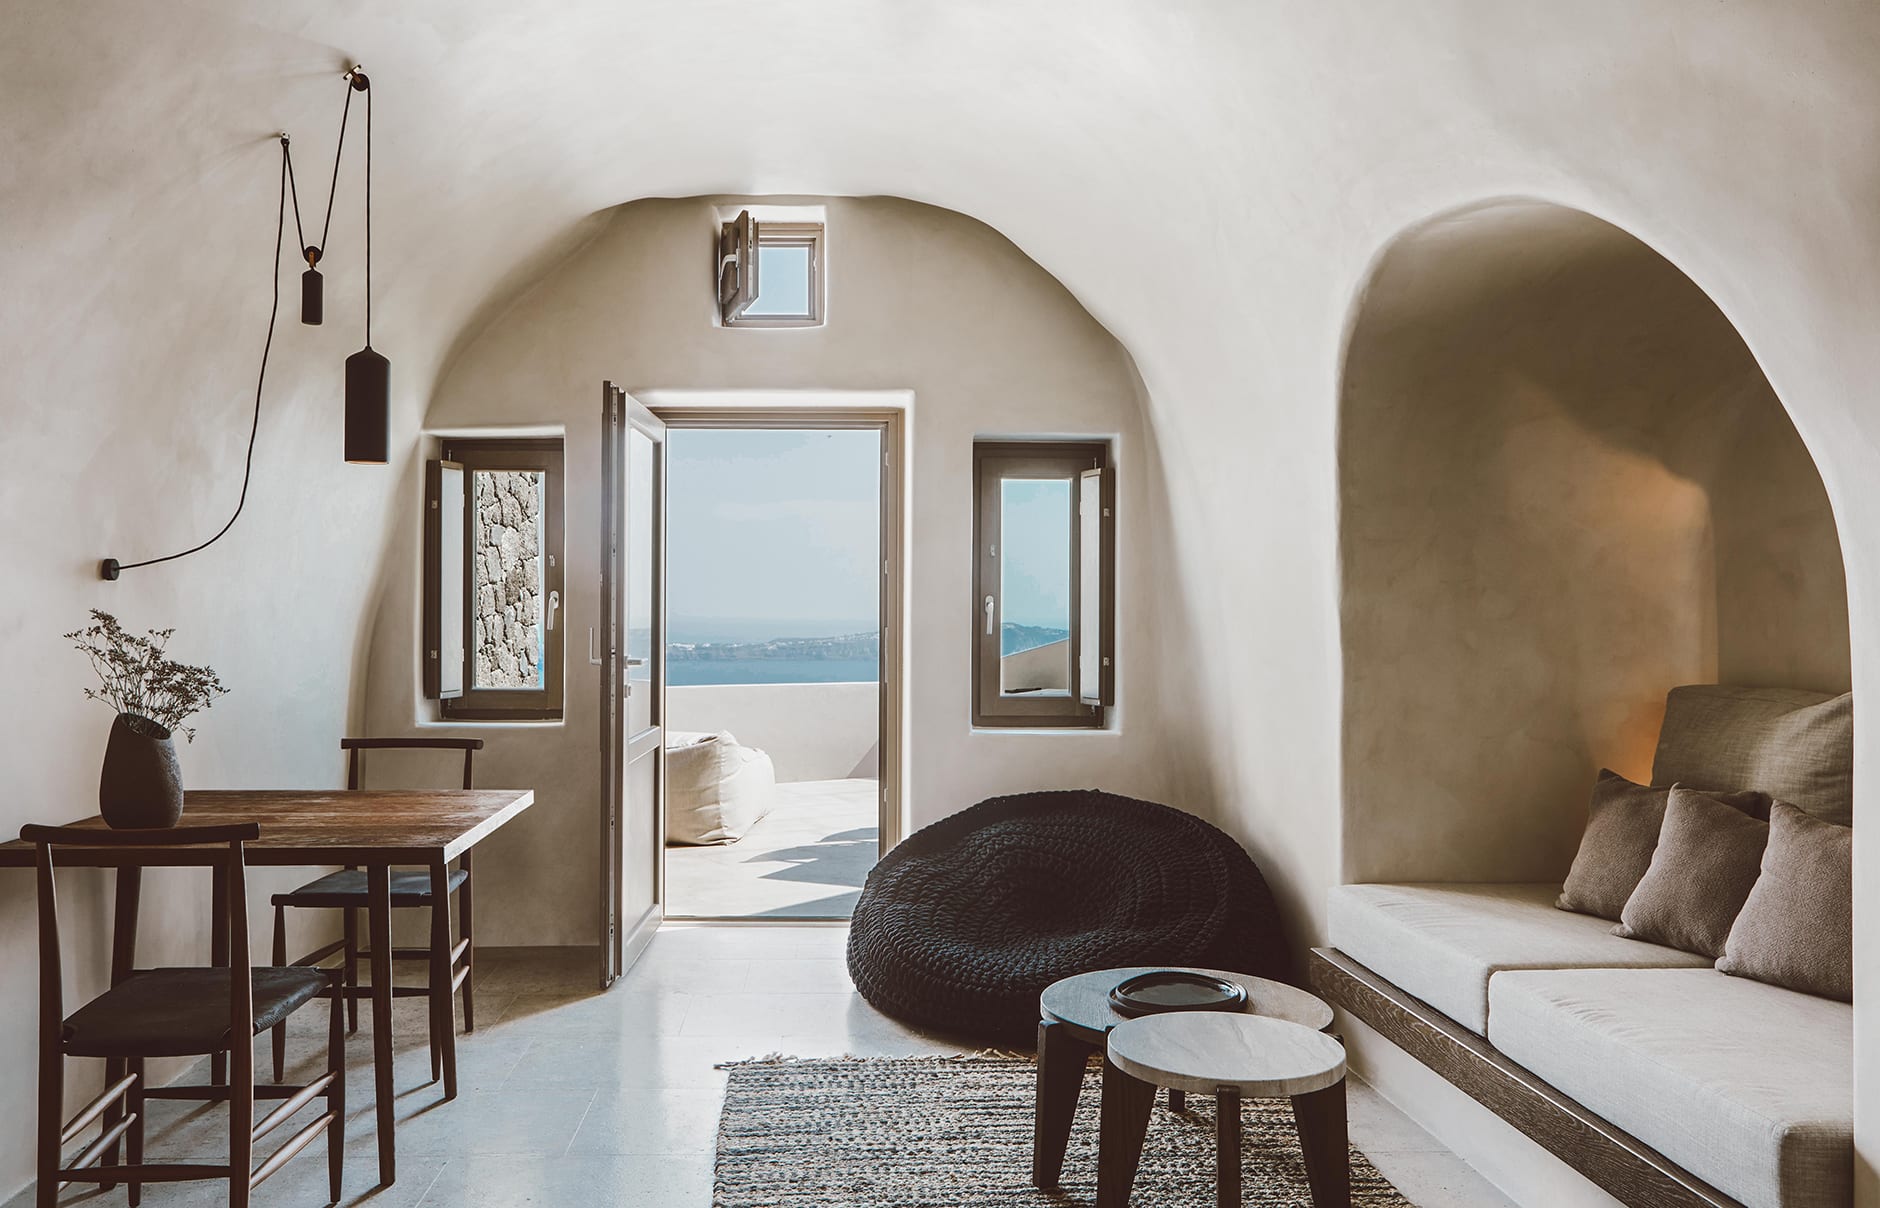 Vora Villas Santorini, Greece. Hotel Review by TravelPlusStyle. Photo © VORA